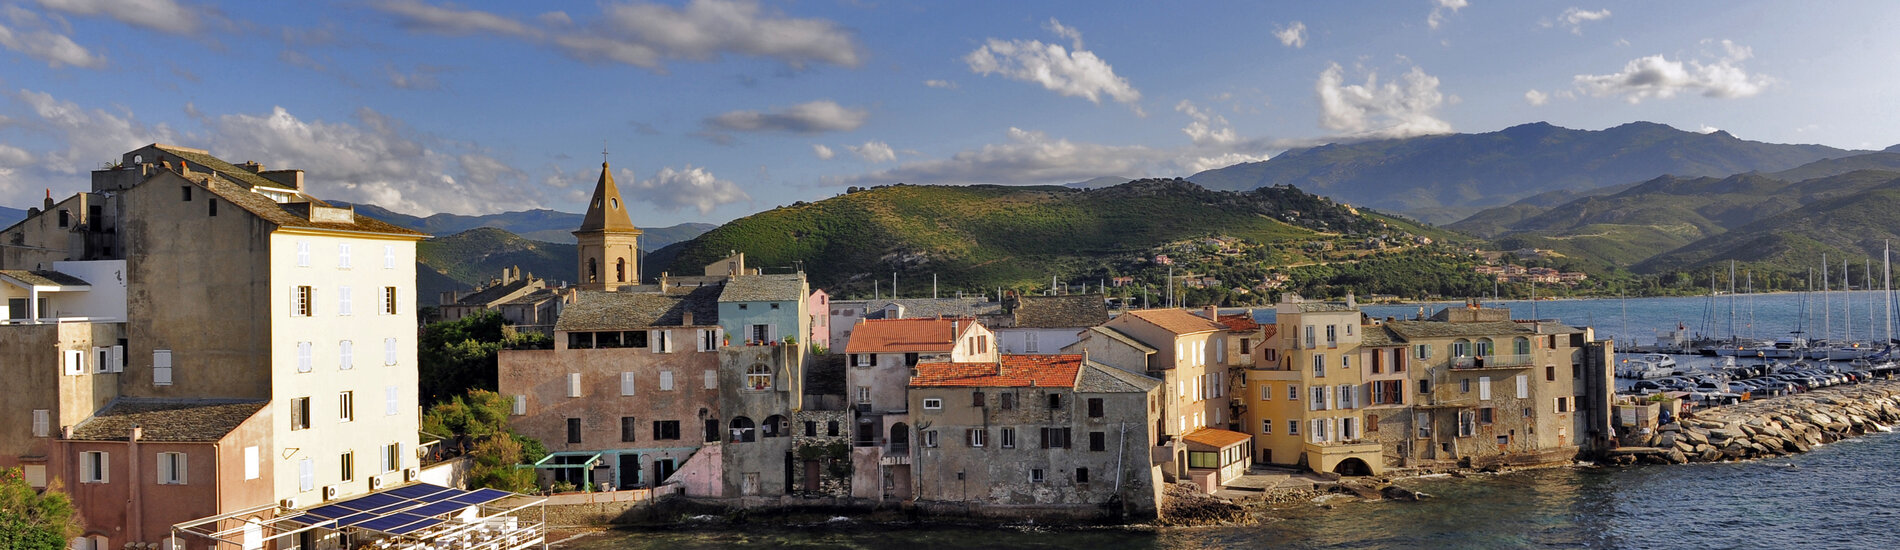 Bus-rondreis, 11 dagen Sardinië en Corsica